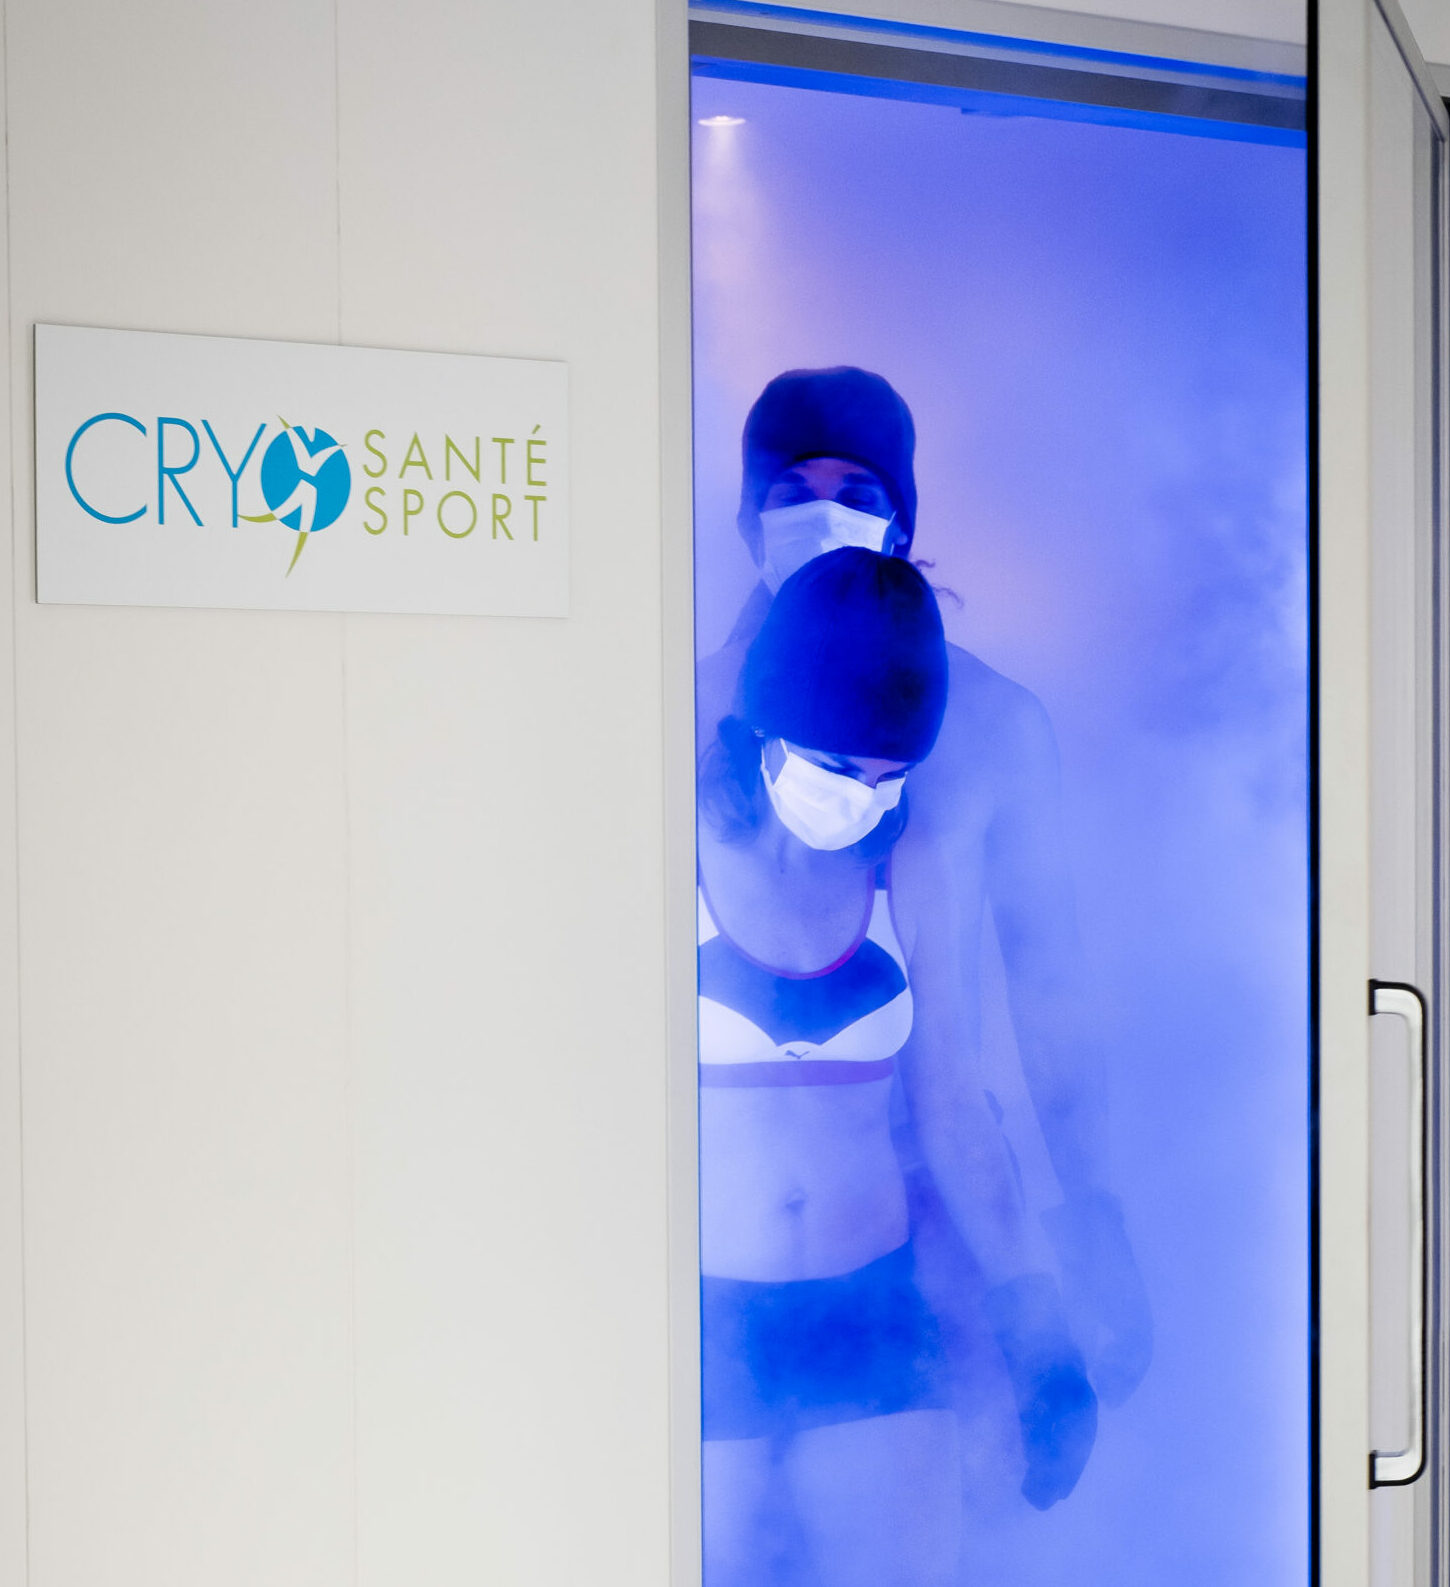 Cryothérapie Corps entier Cryo santé sport information protique